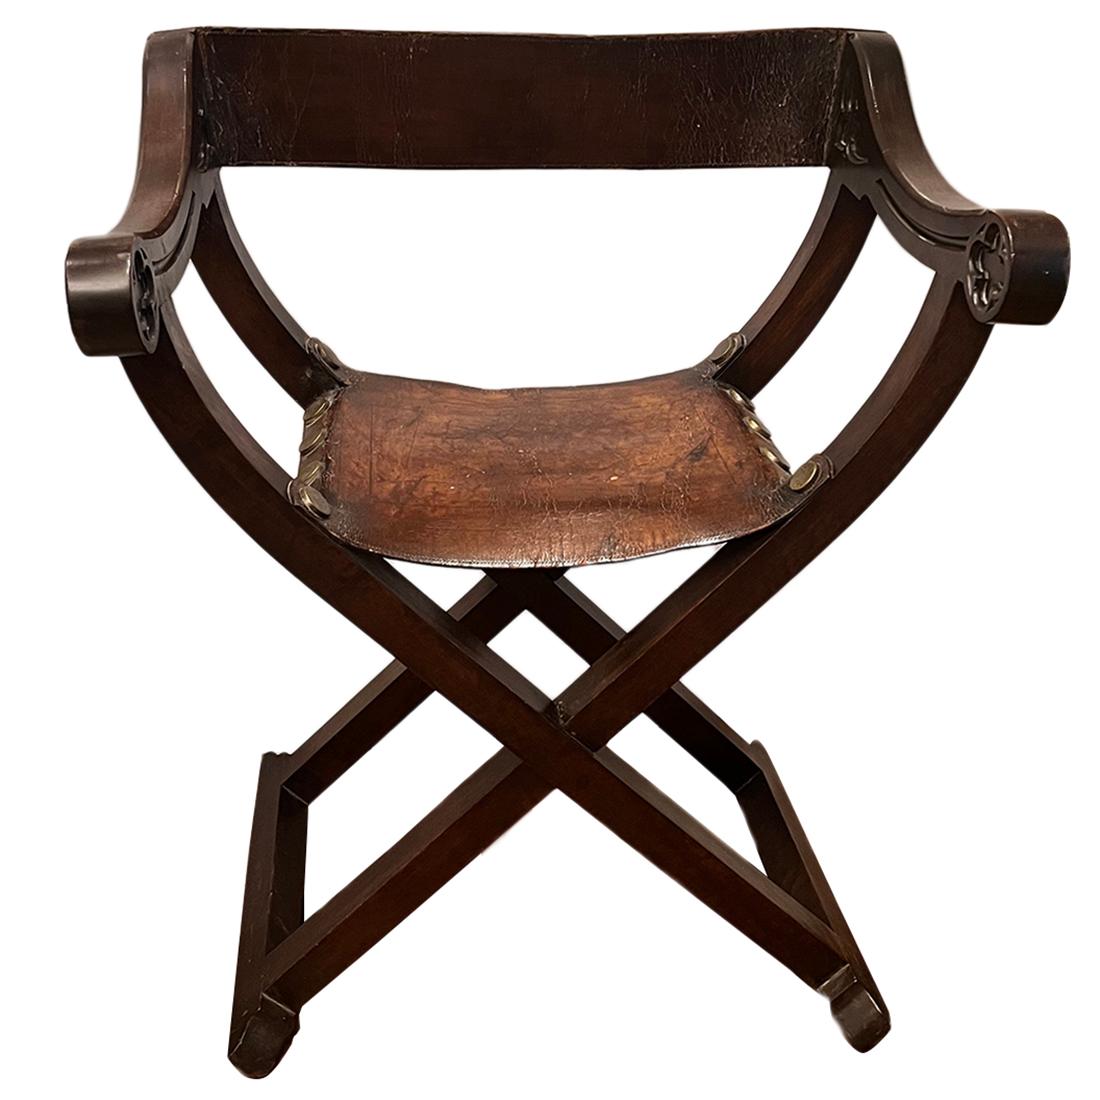 Chaise italienne sculptée d'environ 1900 avec assise et dossier en cuir.

Mesures :
Hauteur : 34